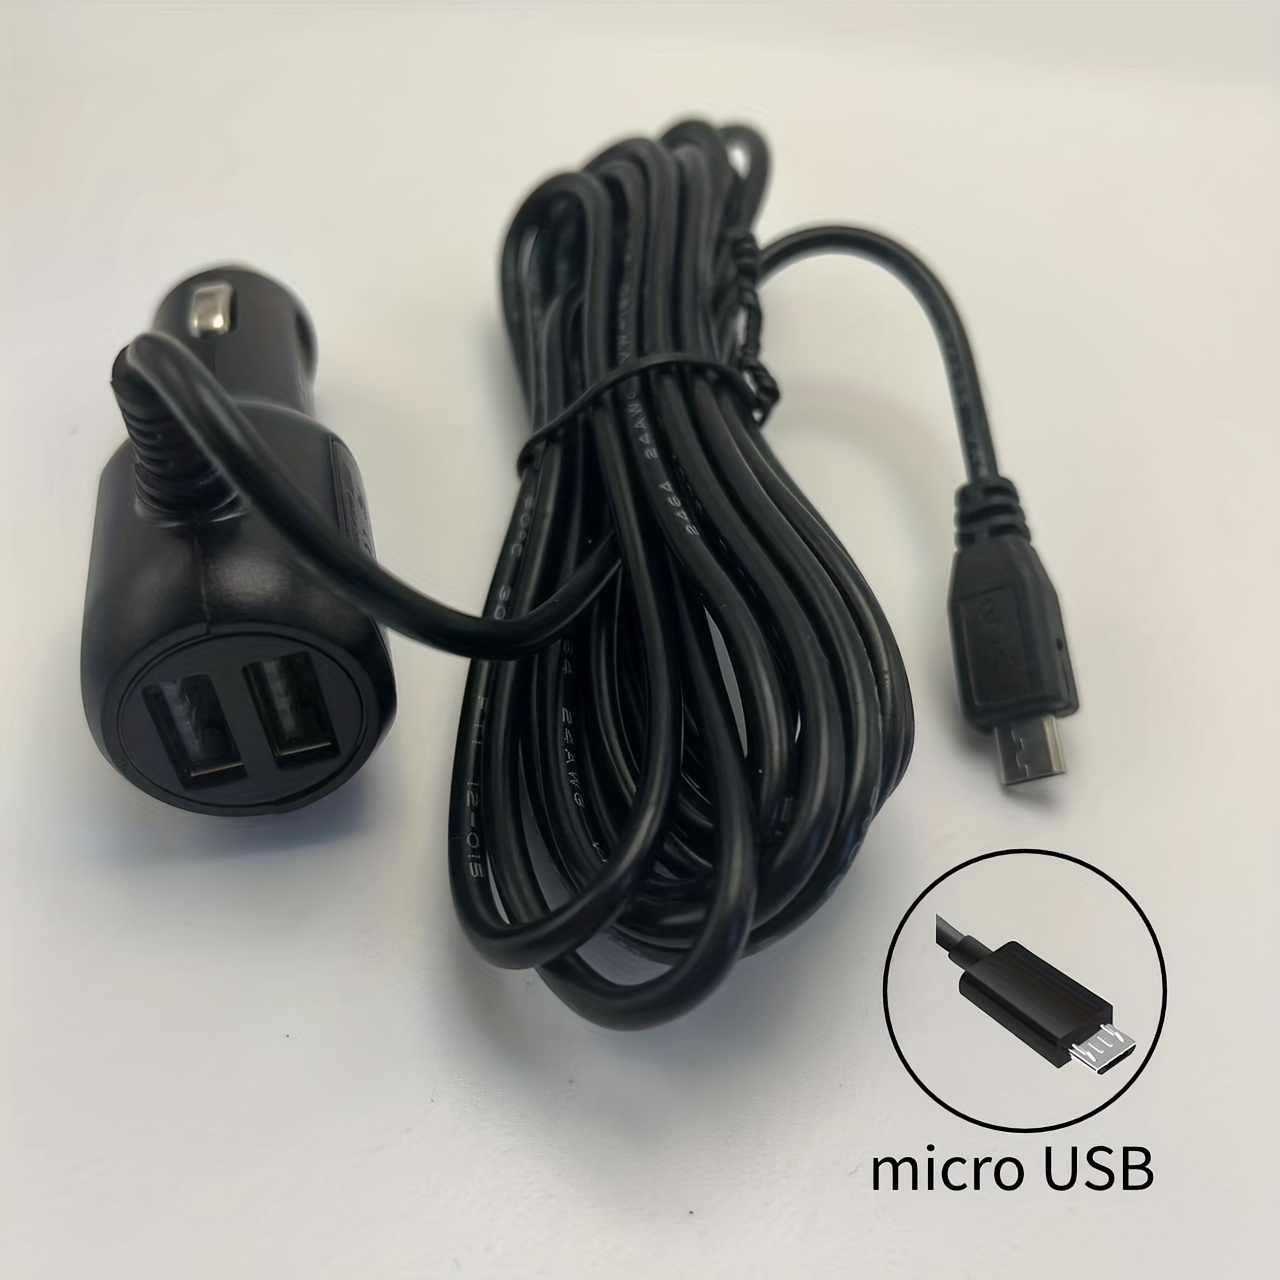 Mini Chargeur USB Voiture - Double port